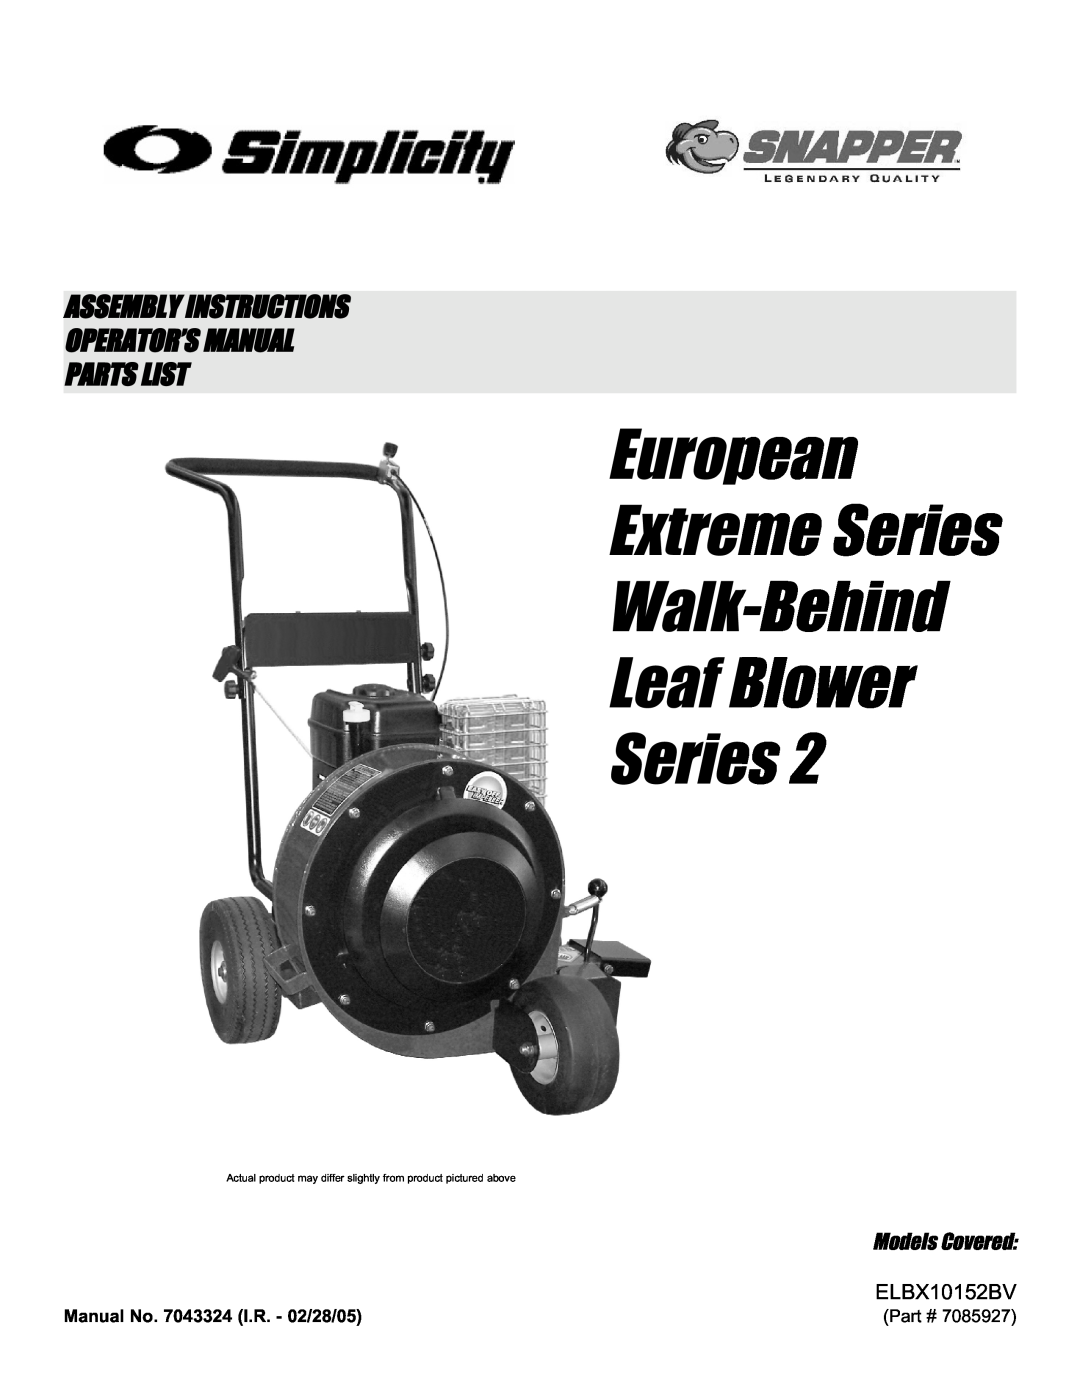 Snapper ELBX10152BV manual European Extreme Series Walk-Behind Leaf Blower Series, Models Covered, 7085927 